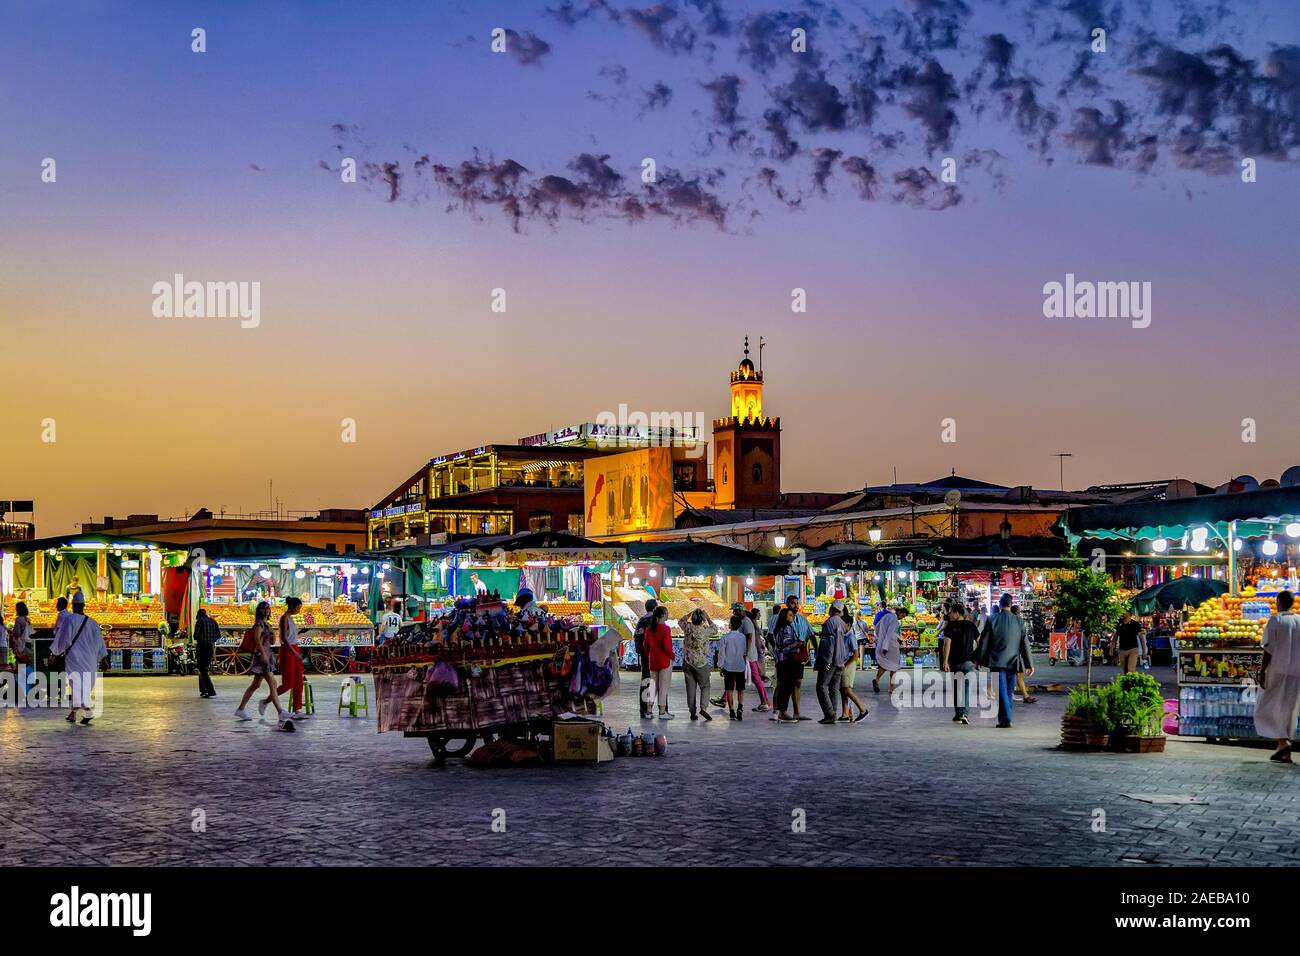 Vivace piazza principale al tramonto a Patrimonio Mondiale UNESCO Piazza Jamaa El Fna piazza del mercato nella Medina di Marrakech,Marocco.Fornitori, artisti e turisti. Foto Stock